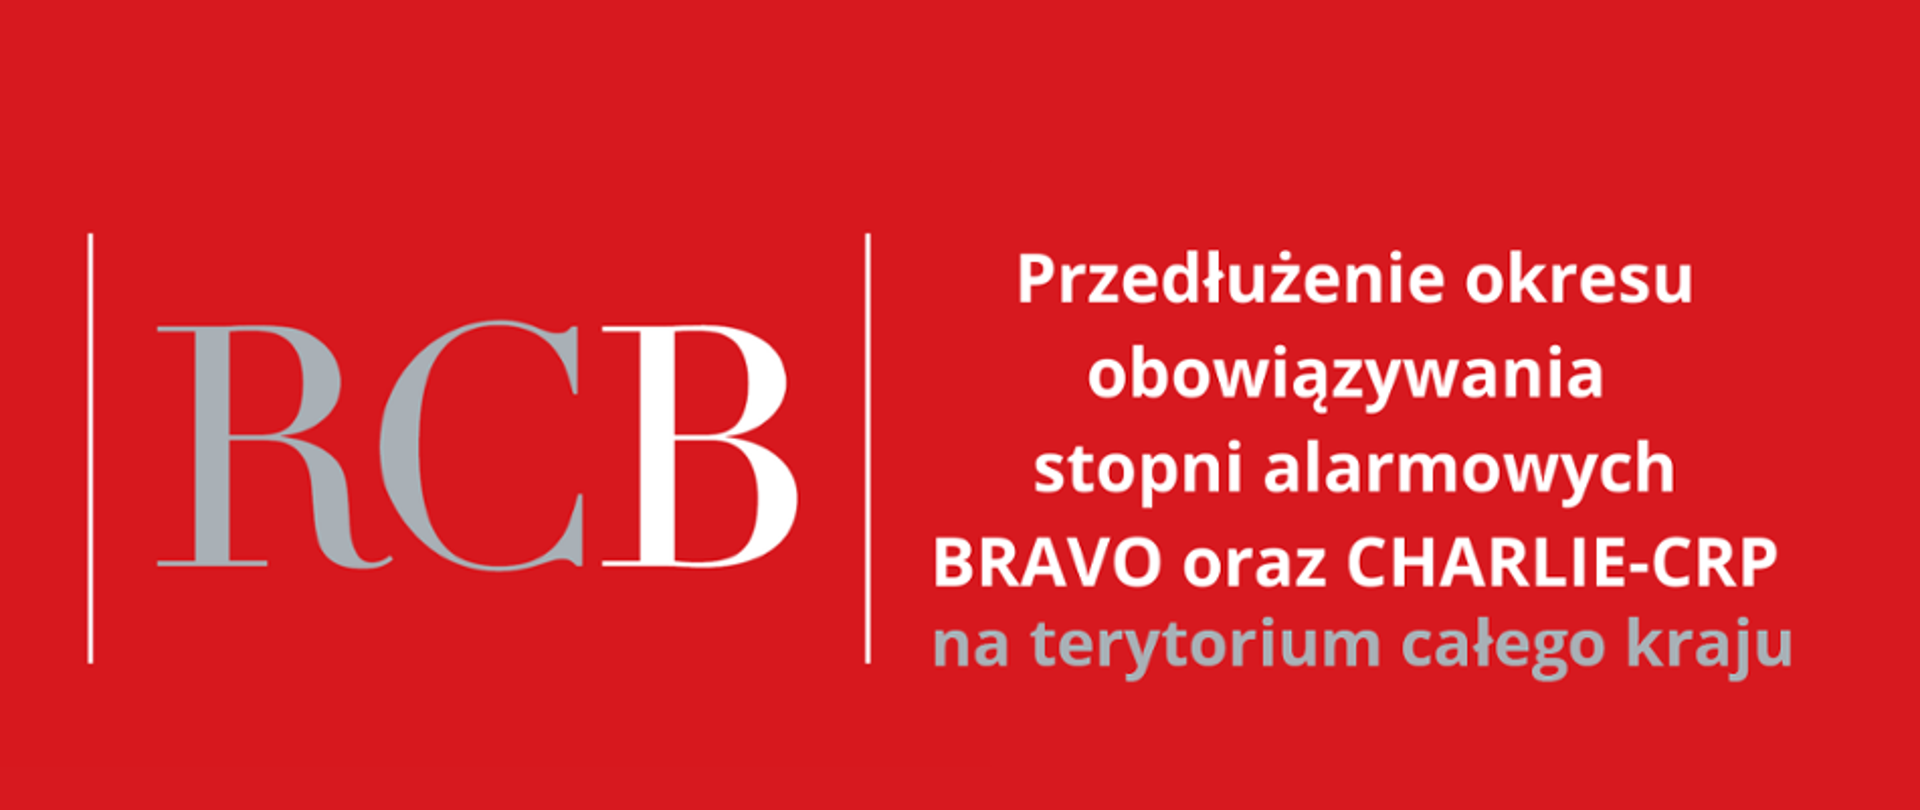 Na czerwonym tle, po lewej stronie widniej napis RCB, a po prawej białą czcionką napisane jest "przedłużenie okresu obowiązywania stopni alarmowych BRAVO oraz CHARLIE-CRP na terytorium całego kraju".